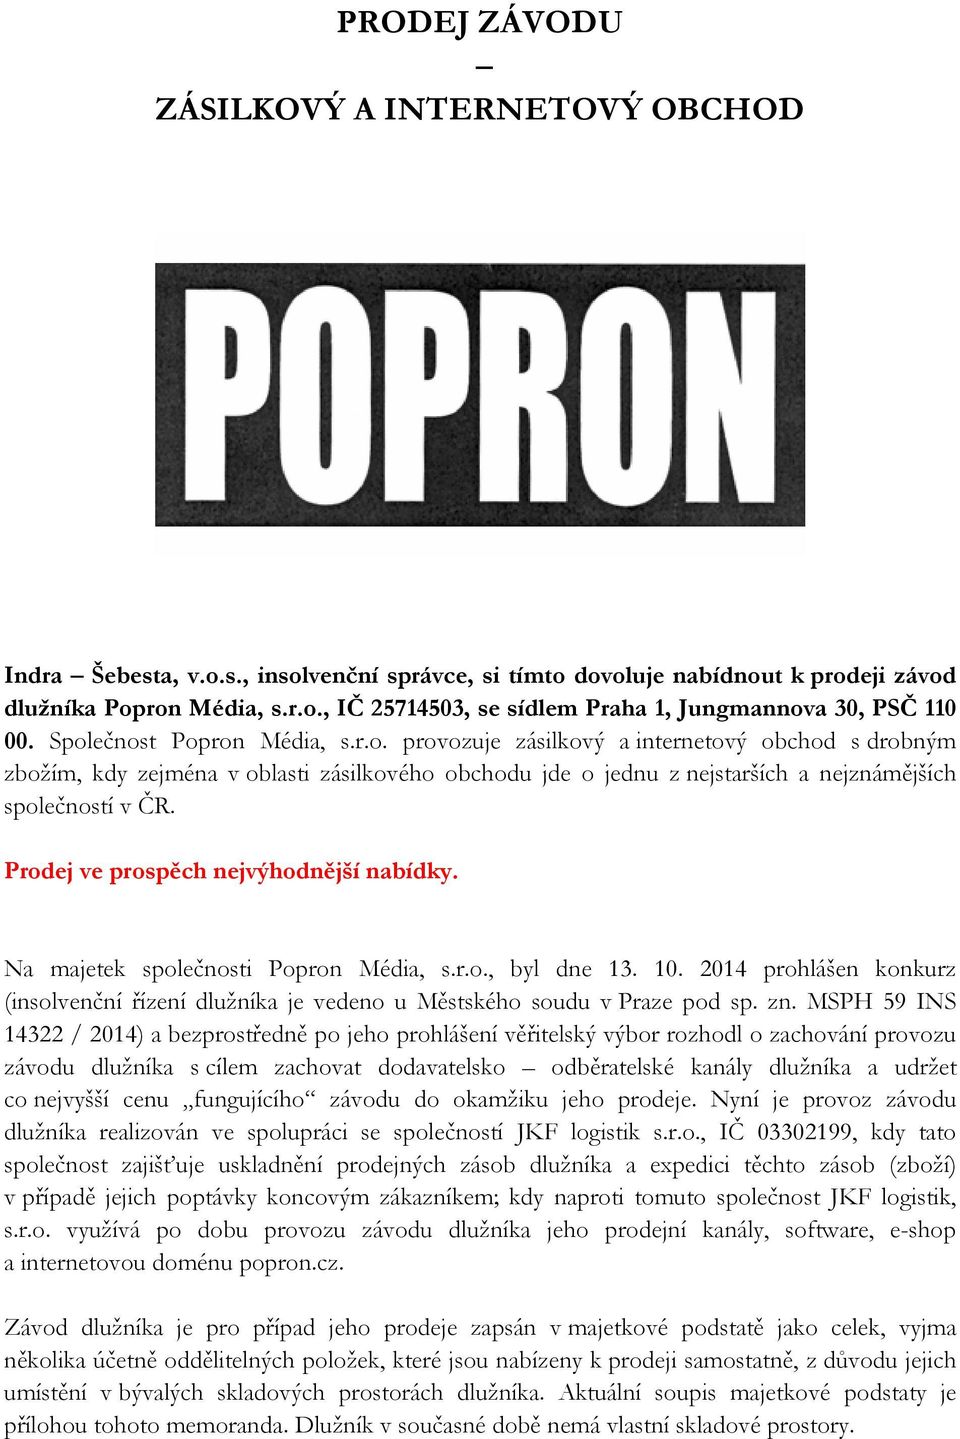 Prodej ve prospěch nejvýhodnější nabídky. Na majetek společnosti Popron Média, s.r.o., byl dne 13. 10. 2014 prohlášen konkurz (insolvenční řízení dlužníka je vedeno u Městského soudu v Praze pod sp.